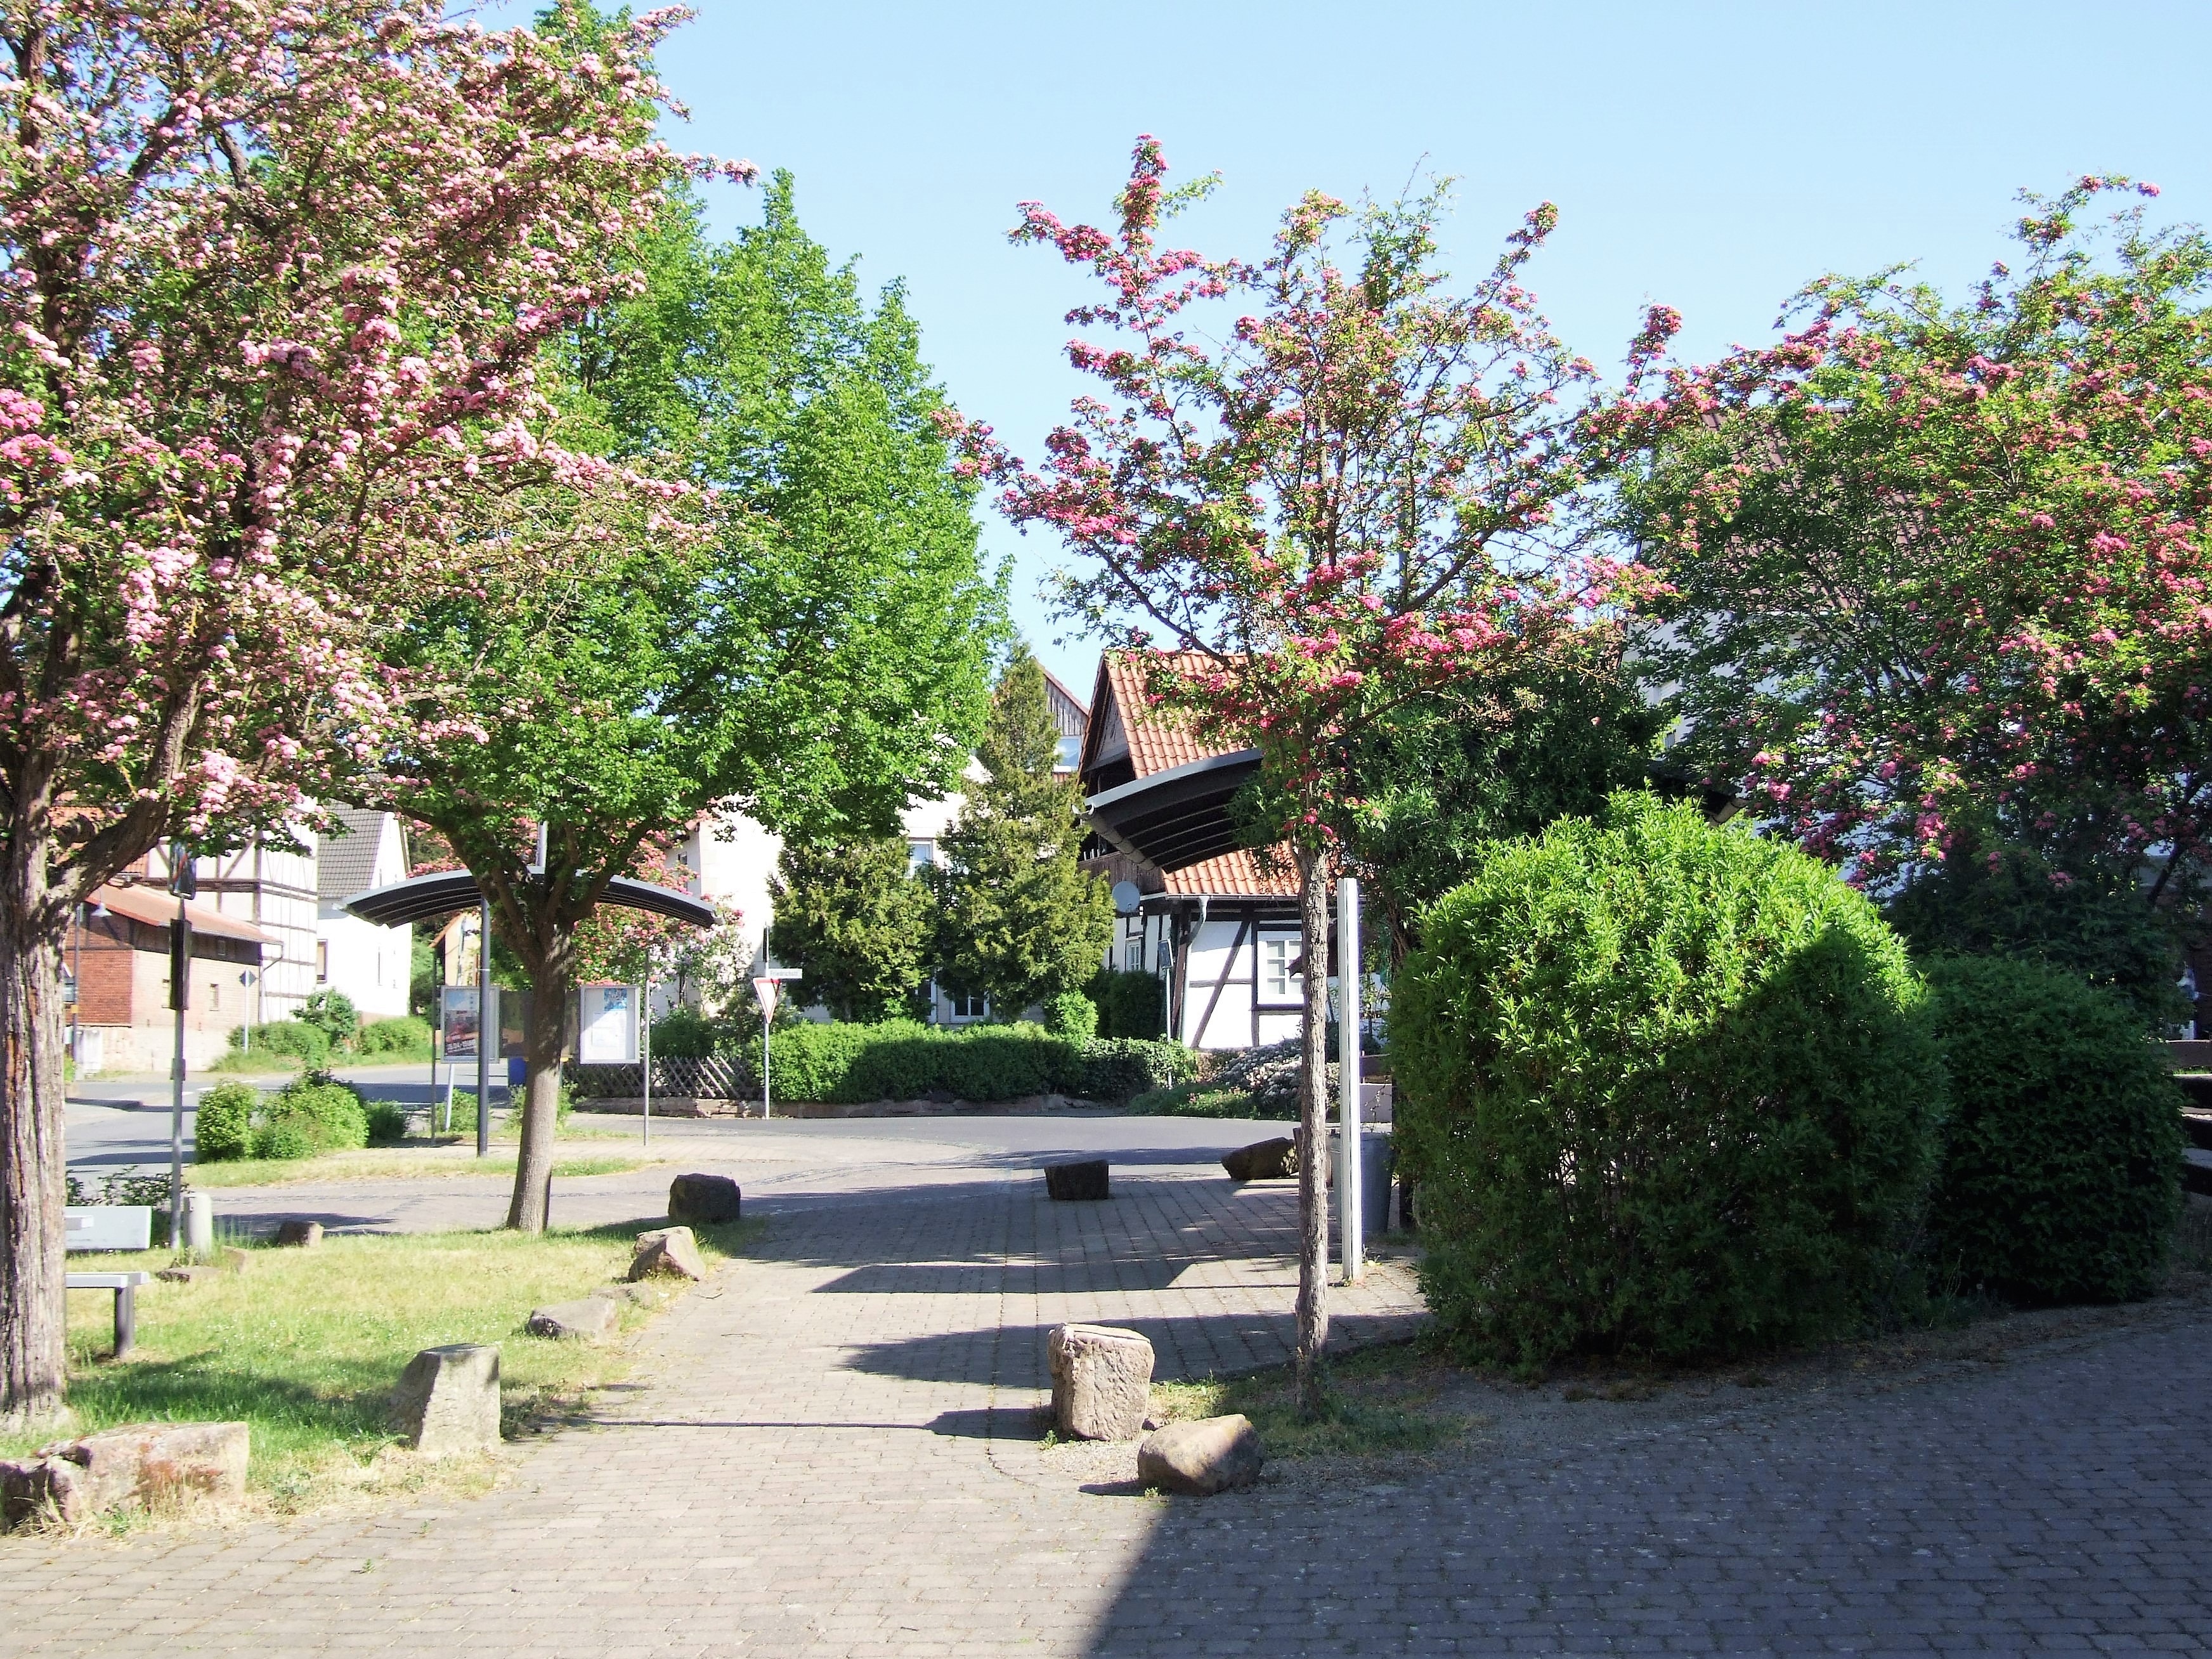 Der Dorfplatz in der Ortsmitte. (Foto: Uli Klein)